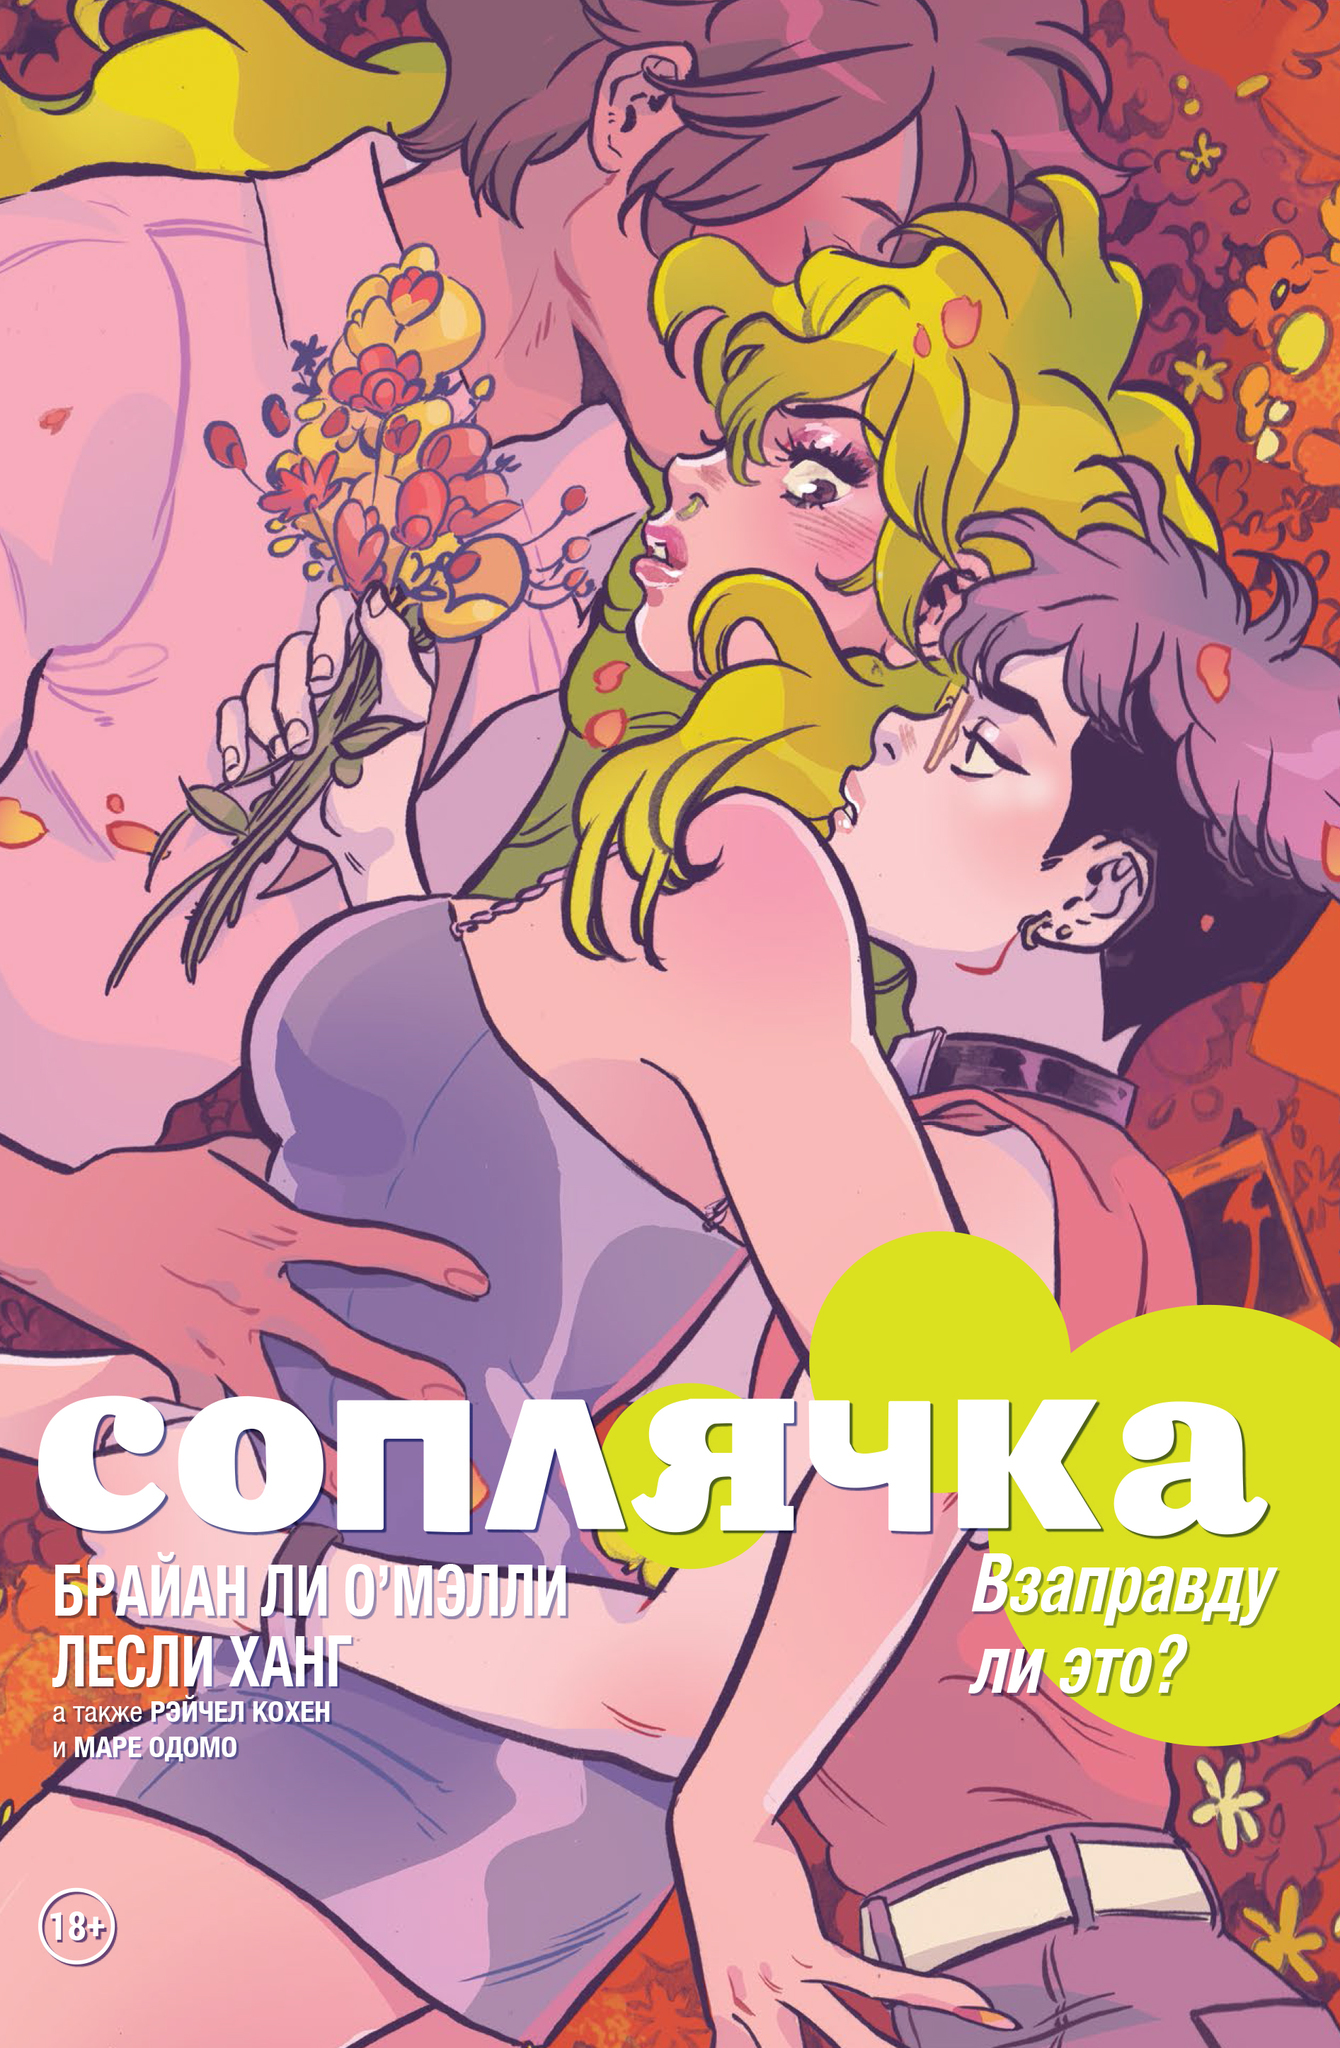 Комикс на русском языке «Соплячка. Том 3. Взаправду ли это?»